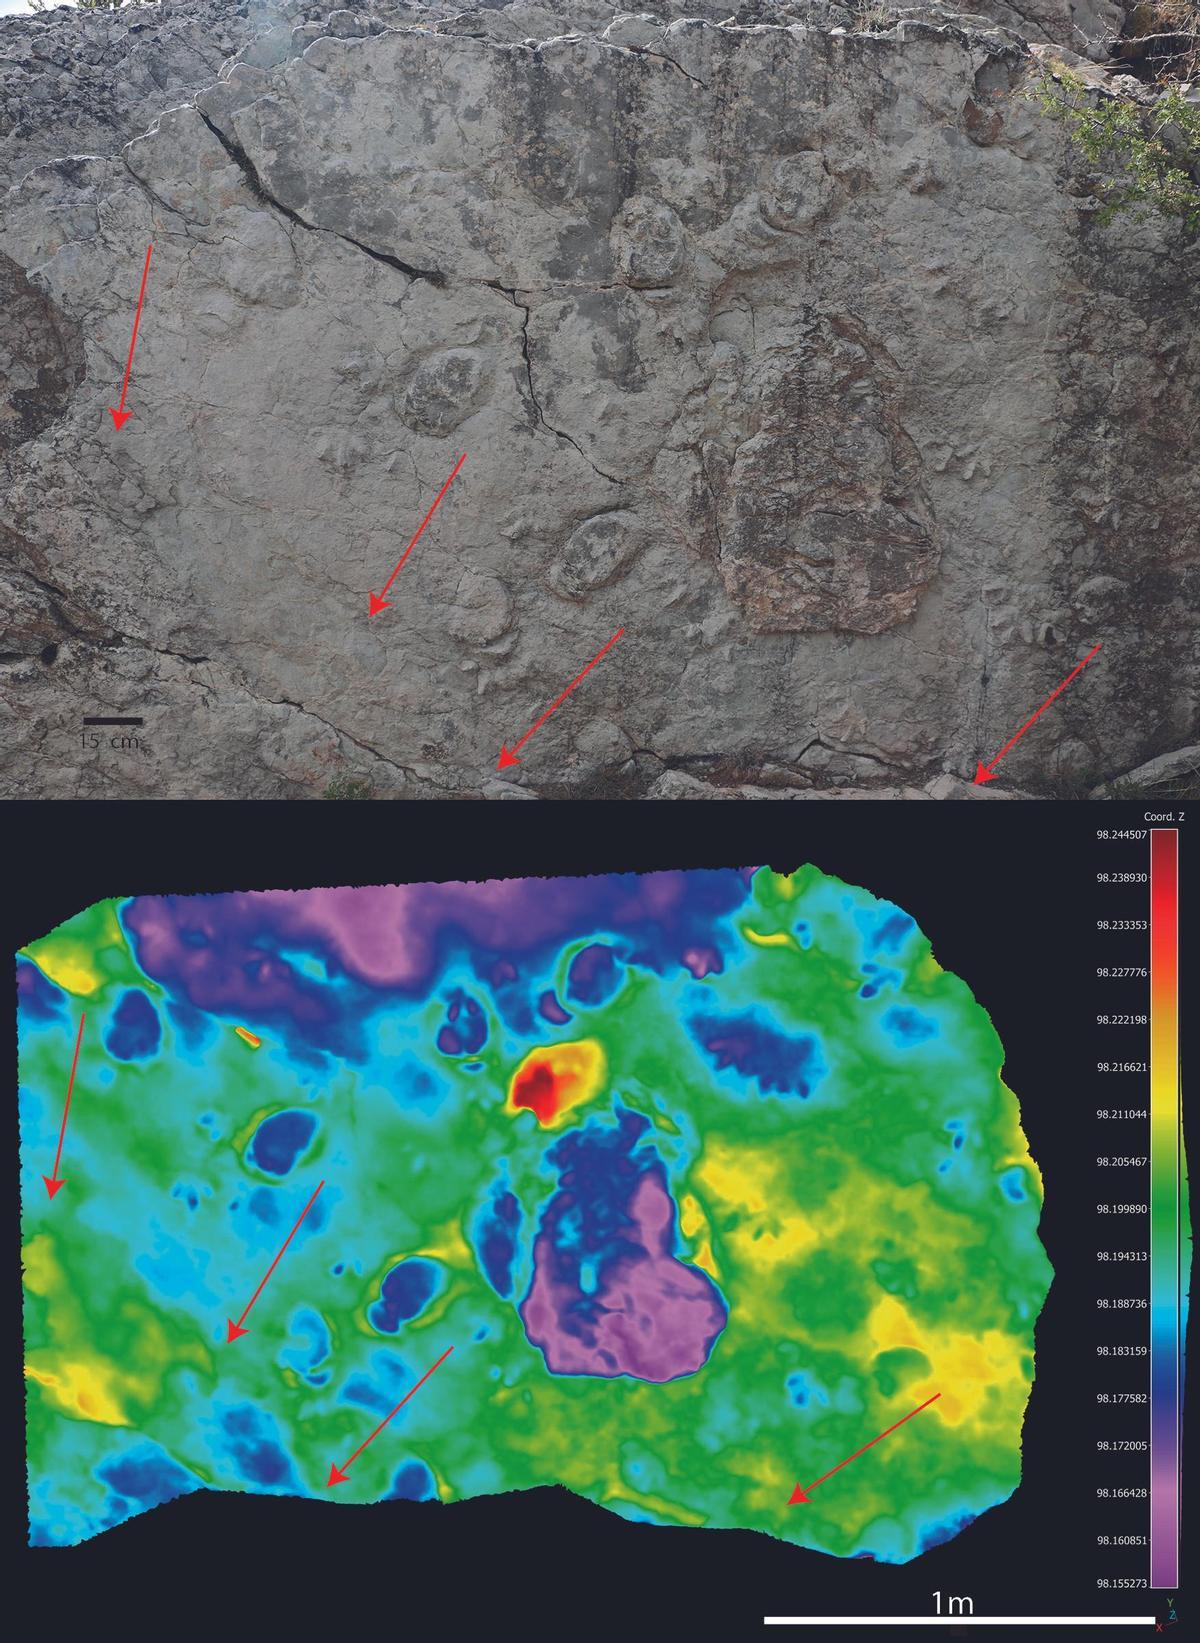 Fotografía y mapa de profundidad por colores del yacimiento “Aguilar 3” en Aguilar del Alfambra (Teruel), donde se indican los rastros paralelos de estegosaurio evidenciando el comportamiento gregario.